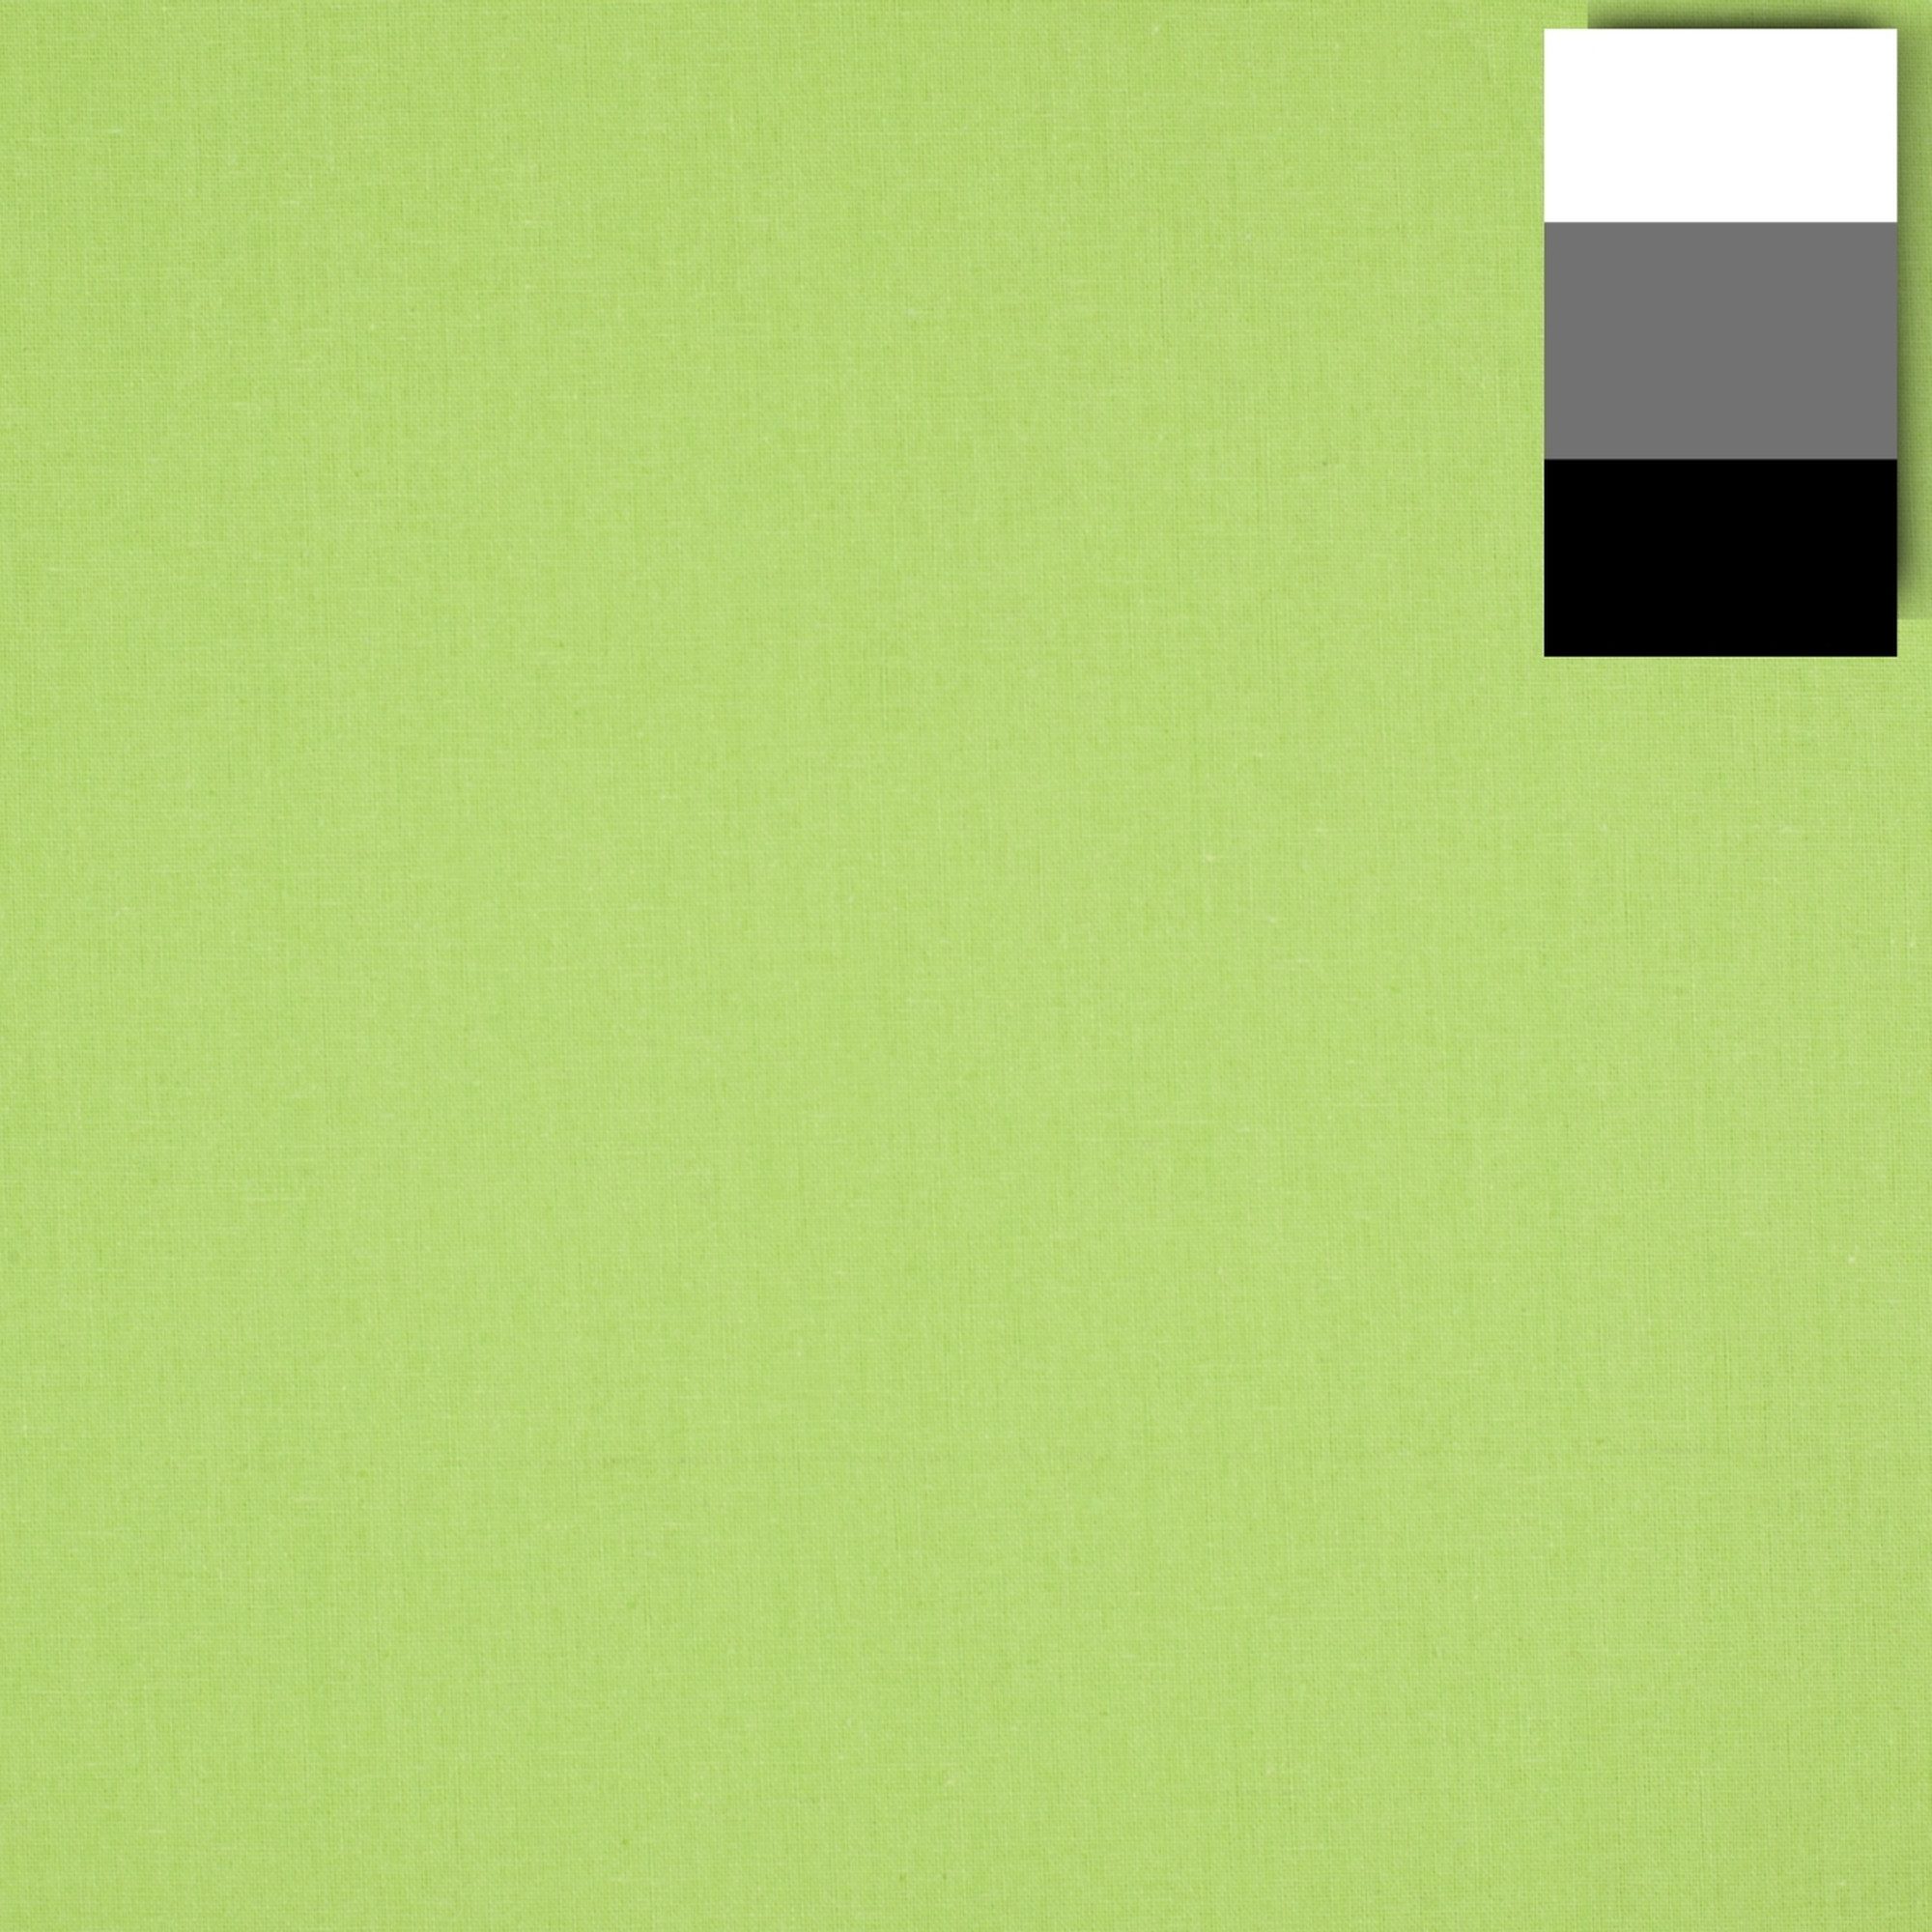 walimex Hintergrundtuch Stoffhintergrund 2,85x6m, hellgrün